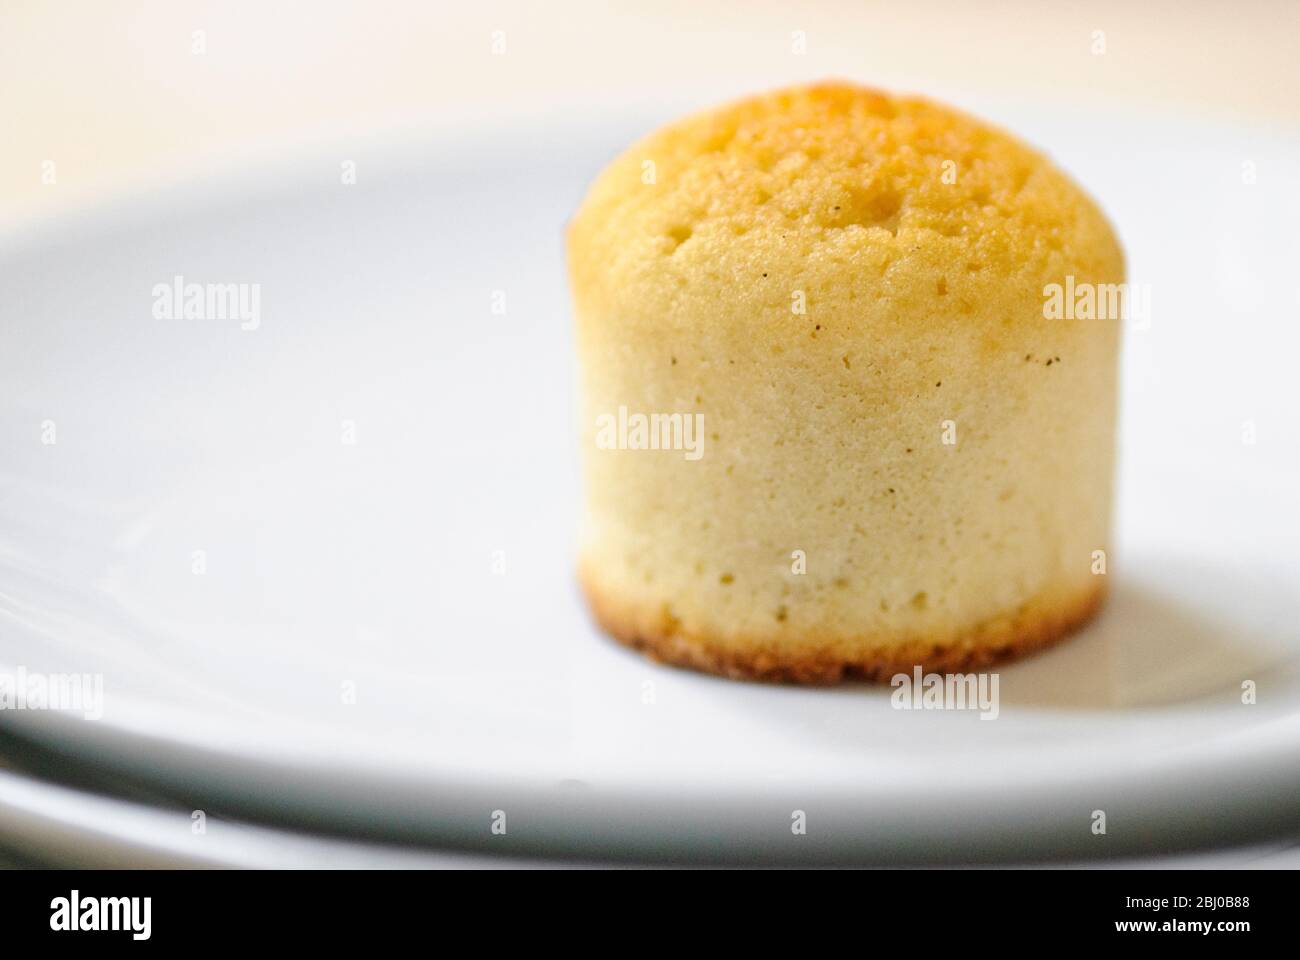 Muffin nach portugiesischem Bollo de Arroz Rezept, hergestellt mit Reismehl und glutenfreiem Mehl - Stockfoto